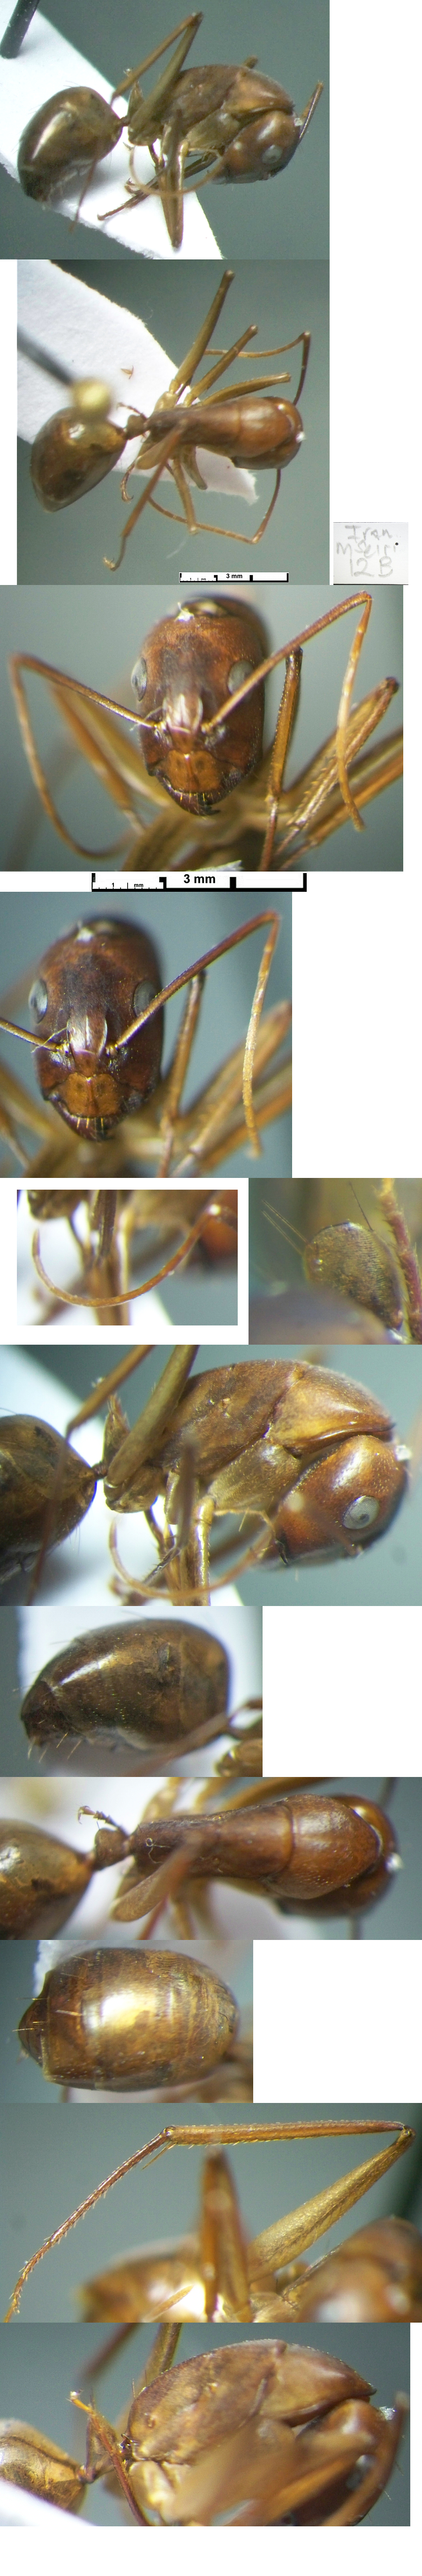 {Camponotus ruzskyellus minor}